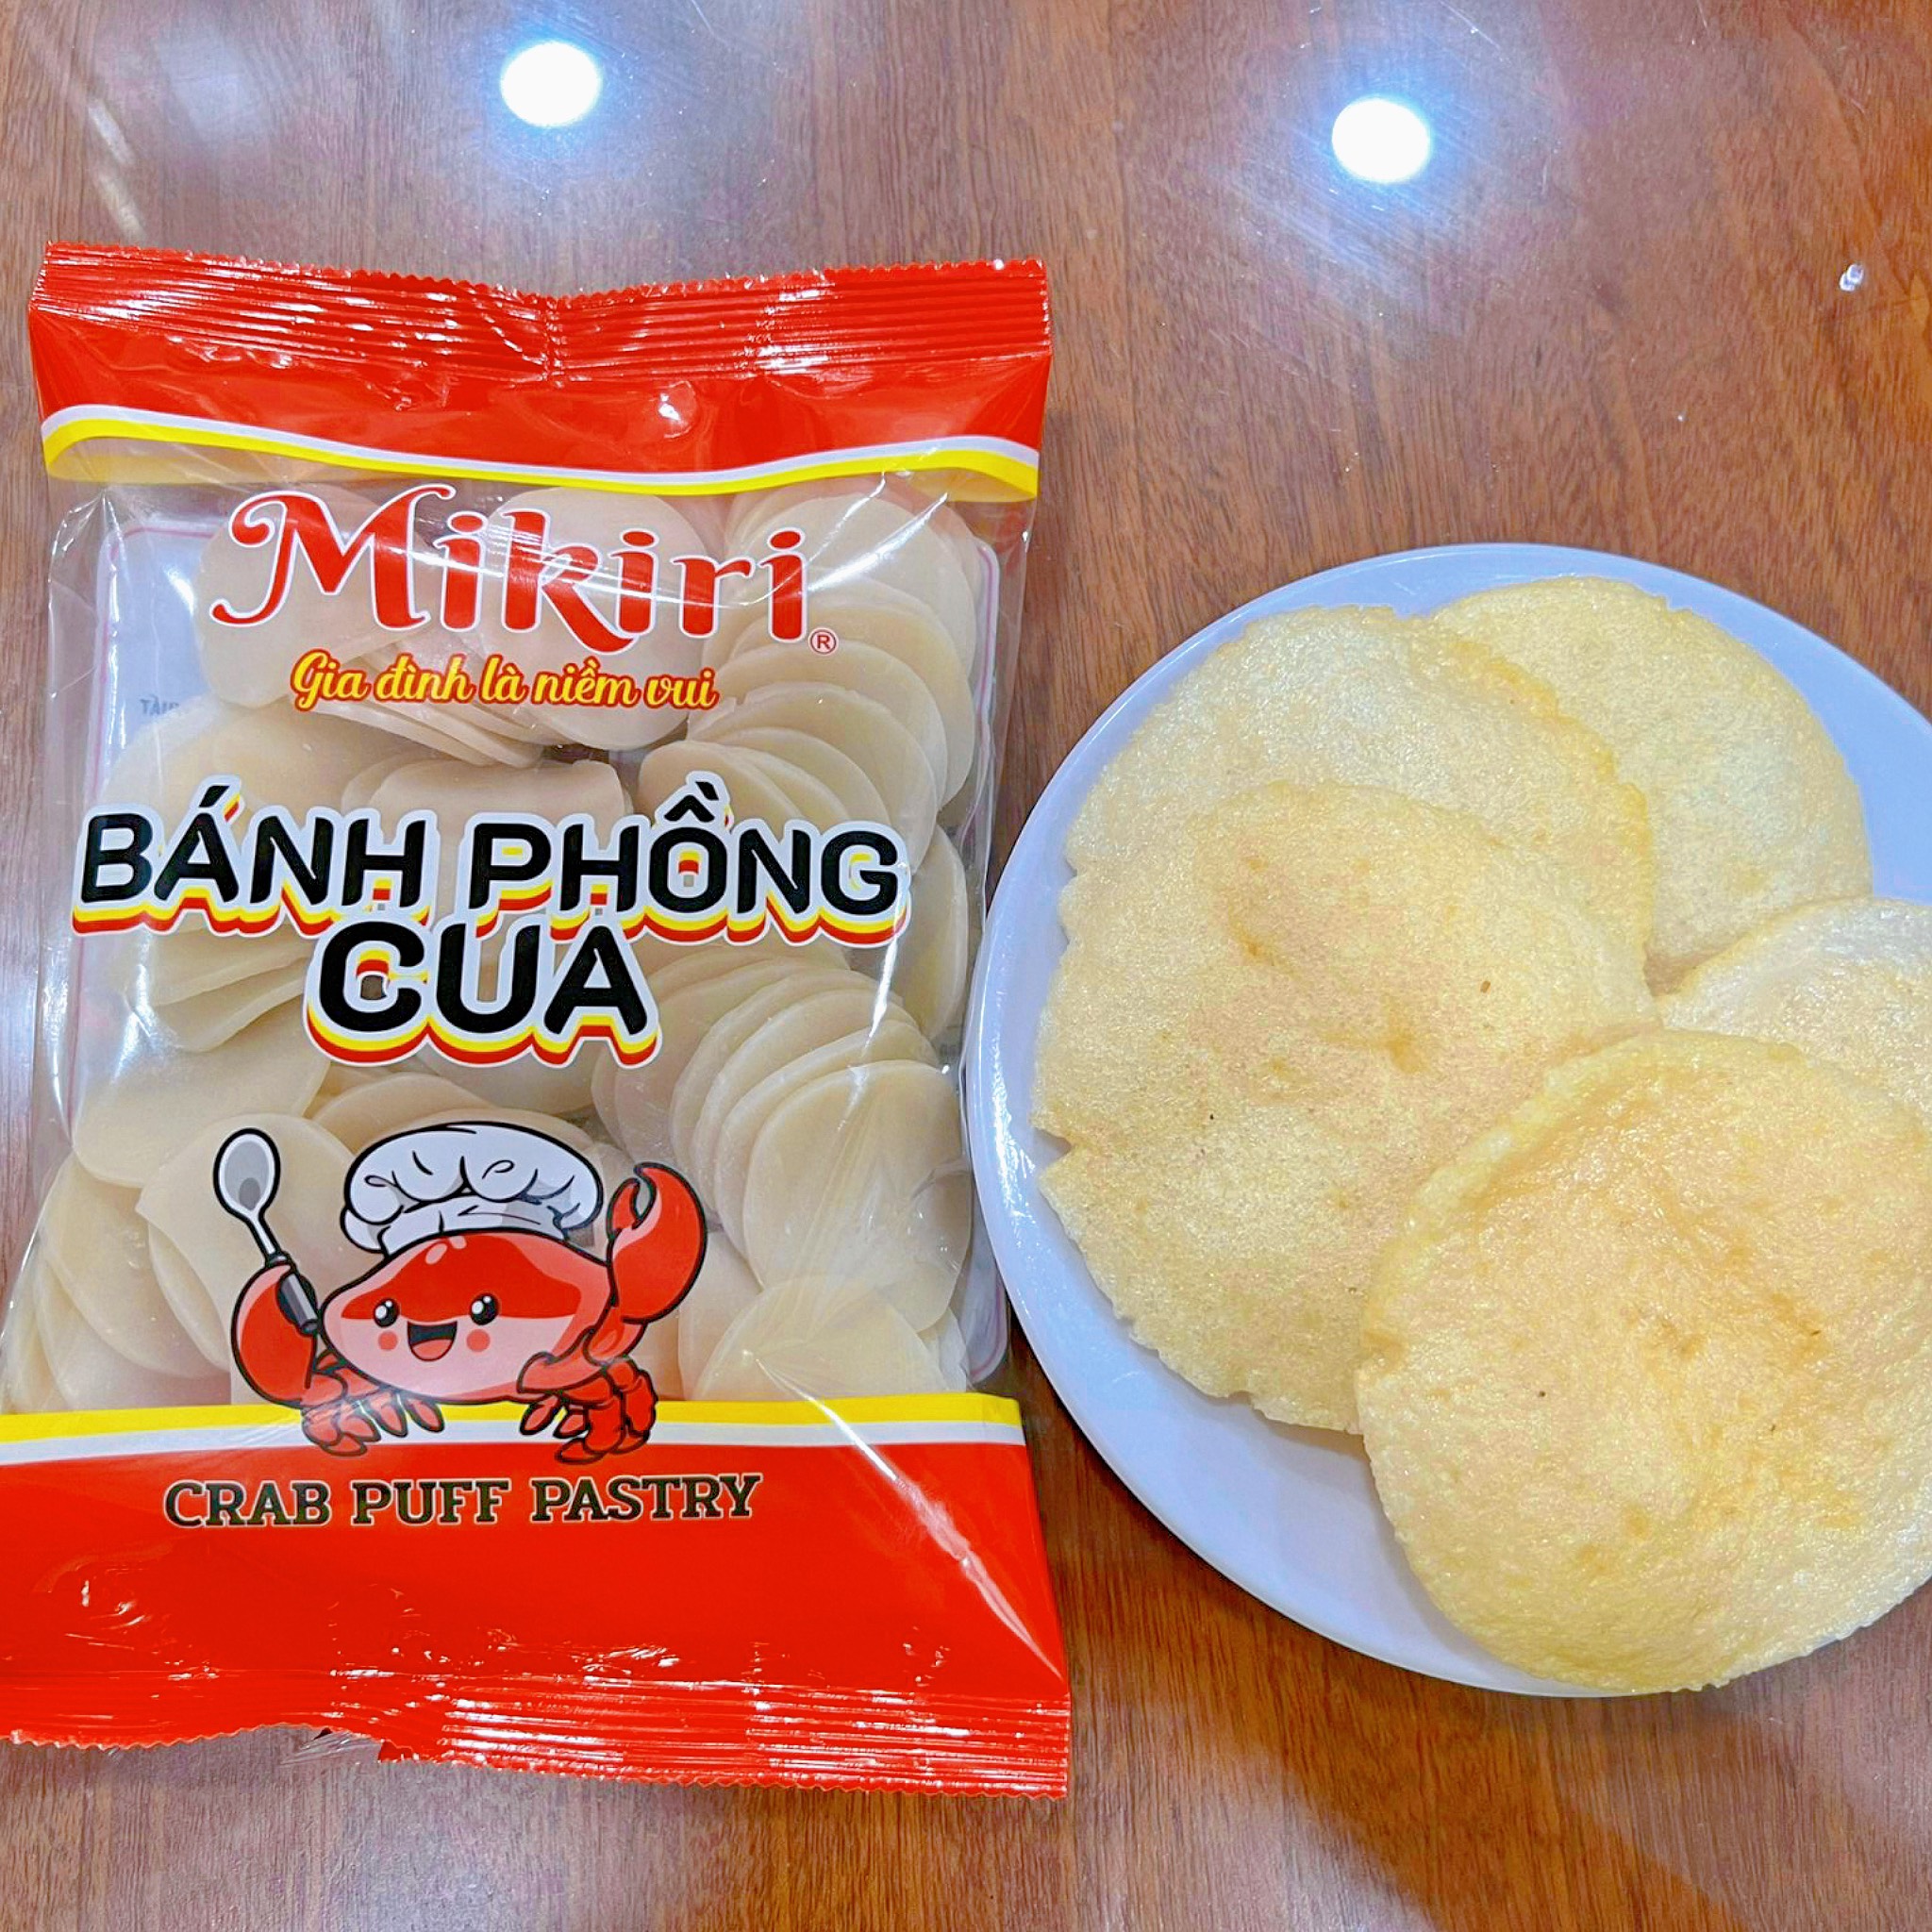 Bánh phồng cua Mikiri - Hương vị quen thuộc, ngon lạ miệng Banh-phong-cua-mikiri-1